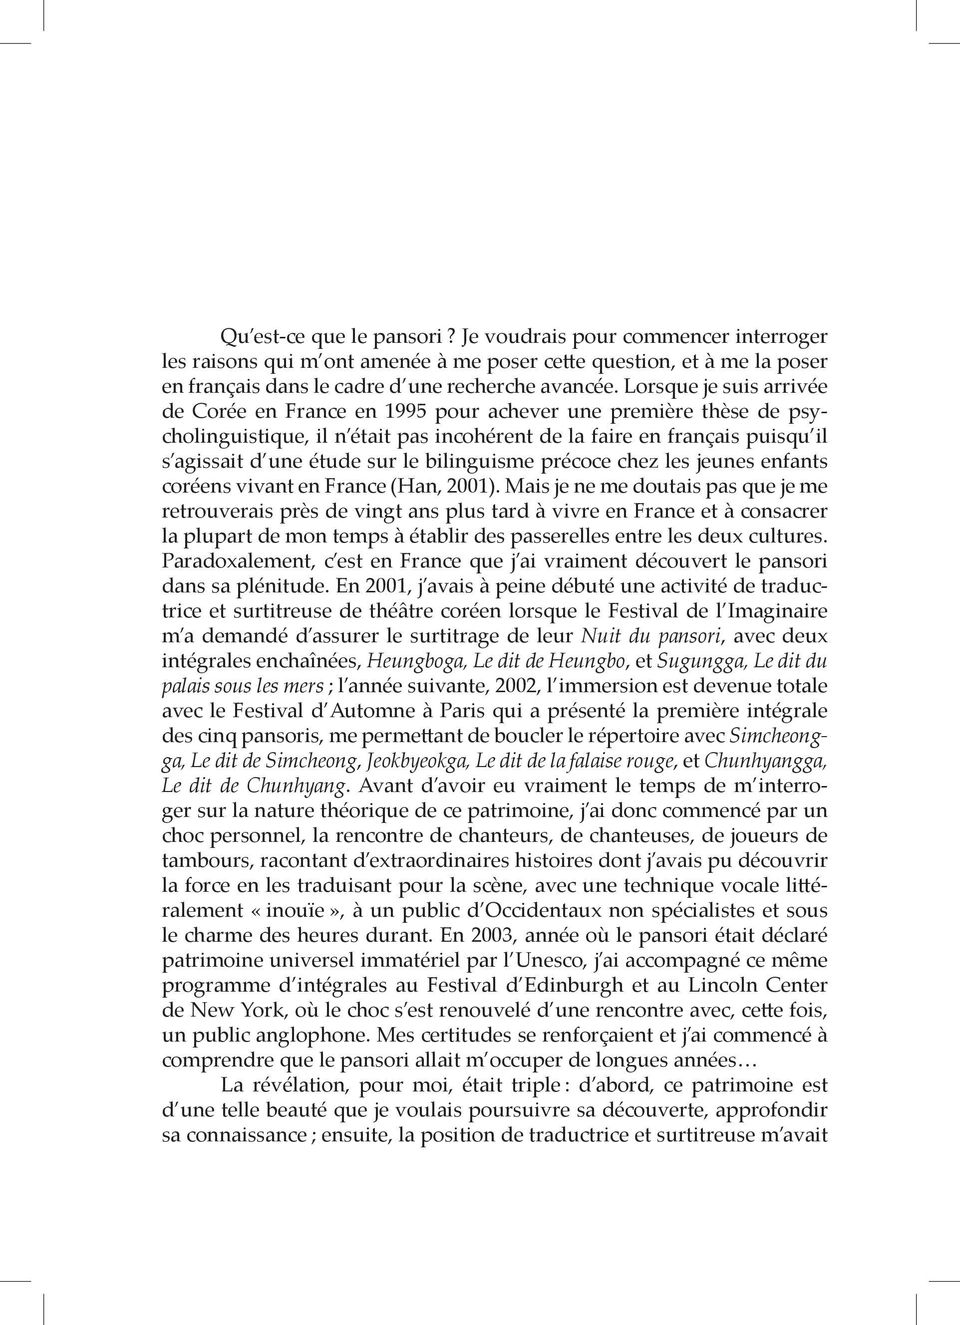 bilinguisme précoce chez les jeunes enfants coréens vivant en France (Han, 2001).